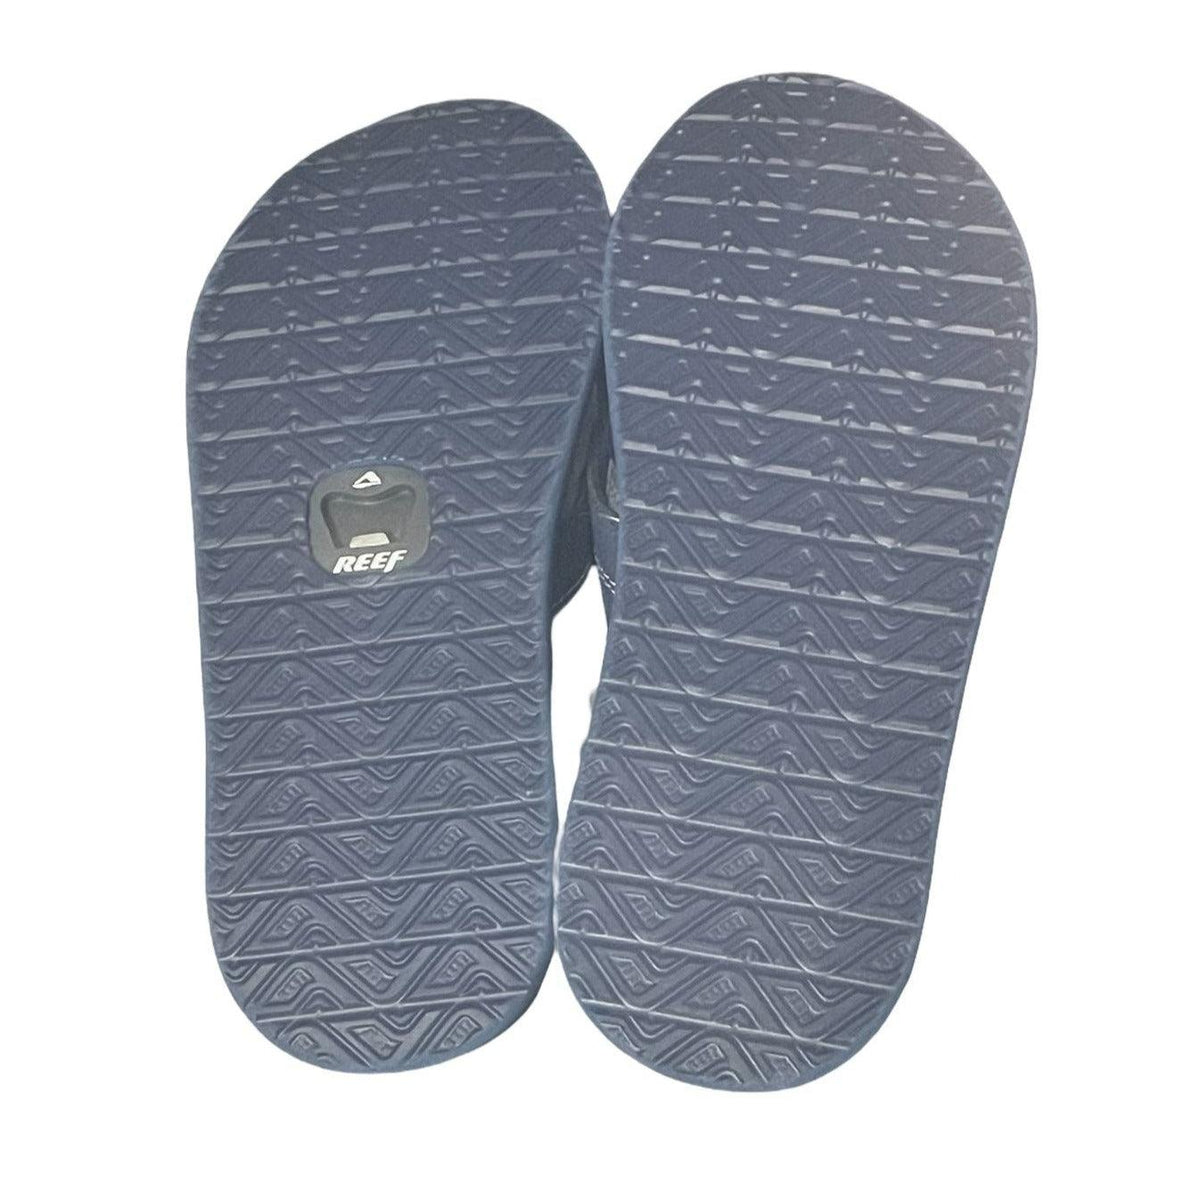 Reef Elements TQT Navy Flip Flop Men's Sandals with Bottle Opener - Men's SandalReef